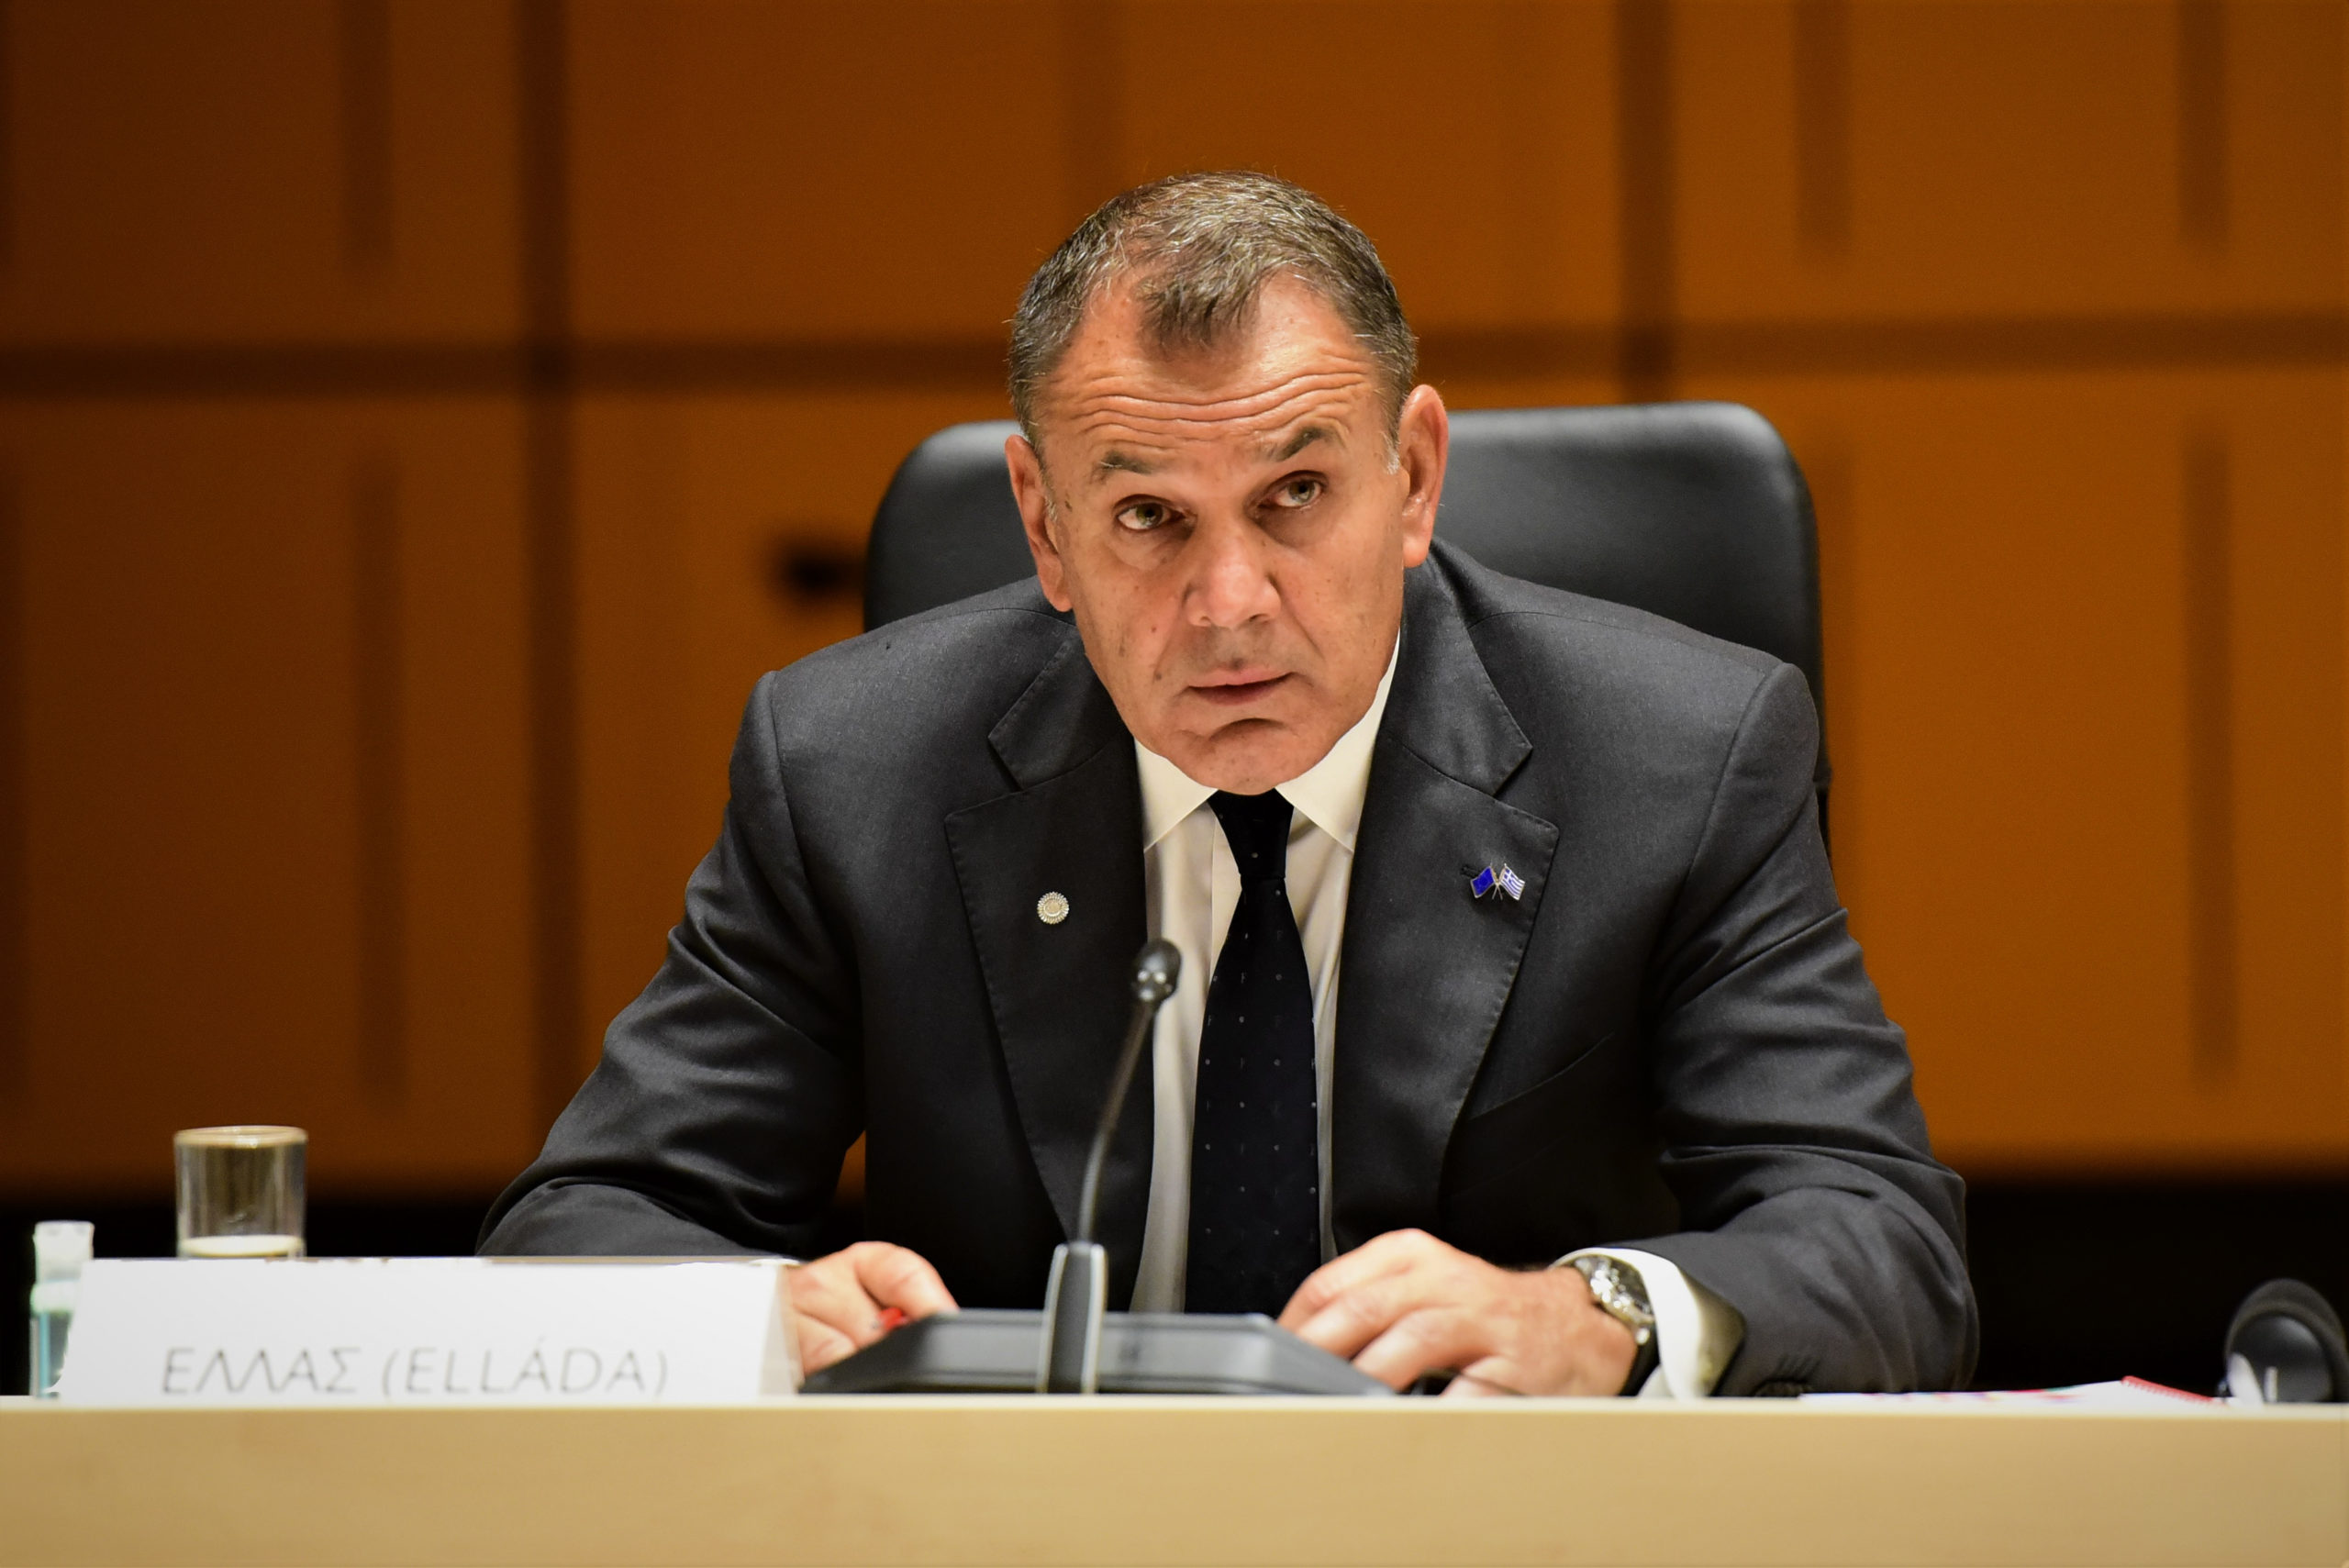 Παναγιωτόπουλος – Στόλτενμπεργκ στη Σύνοδο Υπουργών ΝΑΤΟ: Στο τραπέζι ζητήματα ασφάλειας και ειρήνης